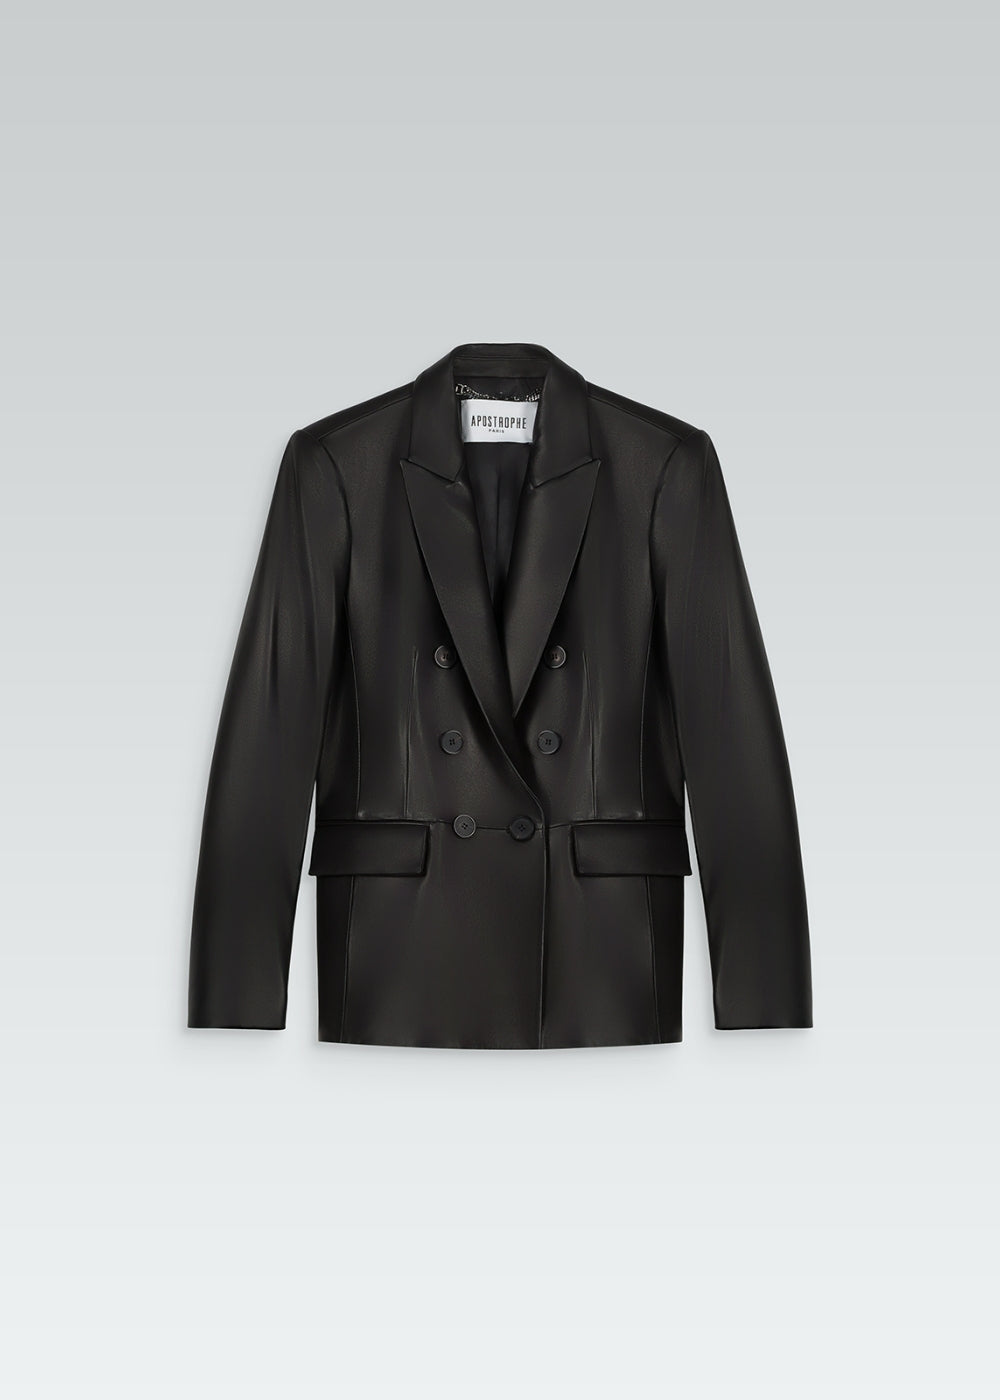 Veste tailleur en cuir noir avec col tailleur, poches à rabat et 6 boutons 